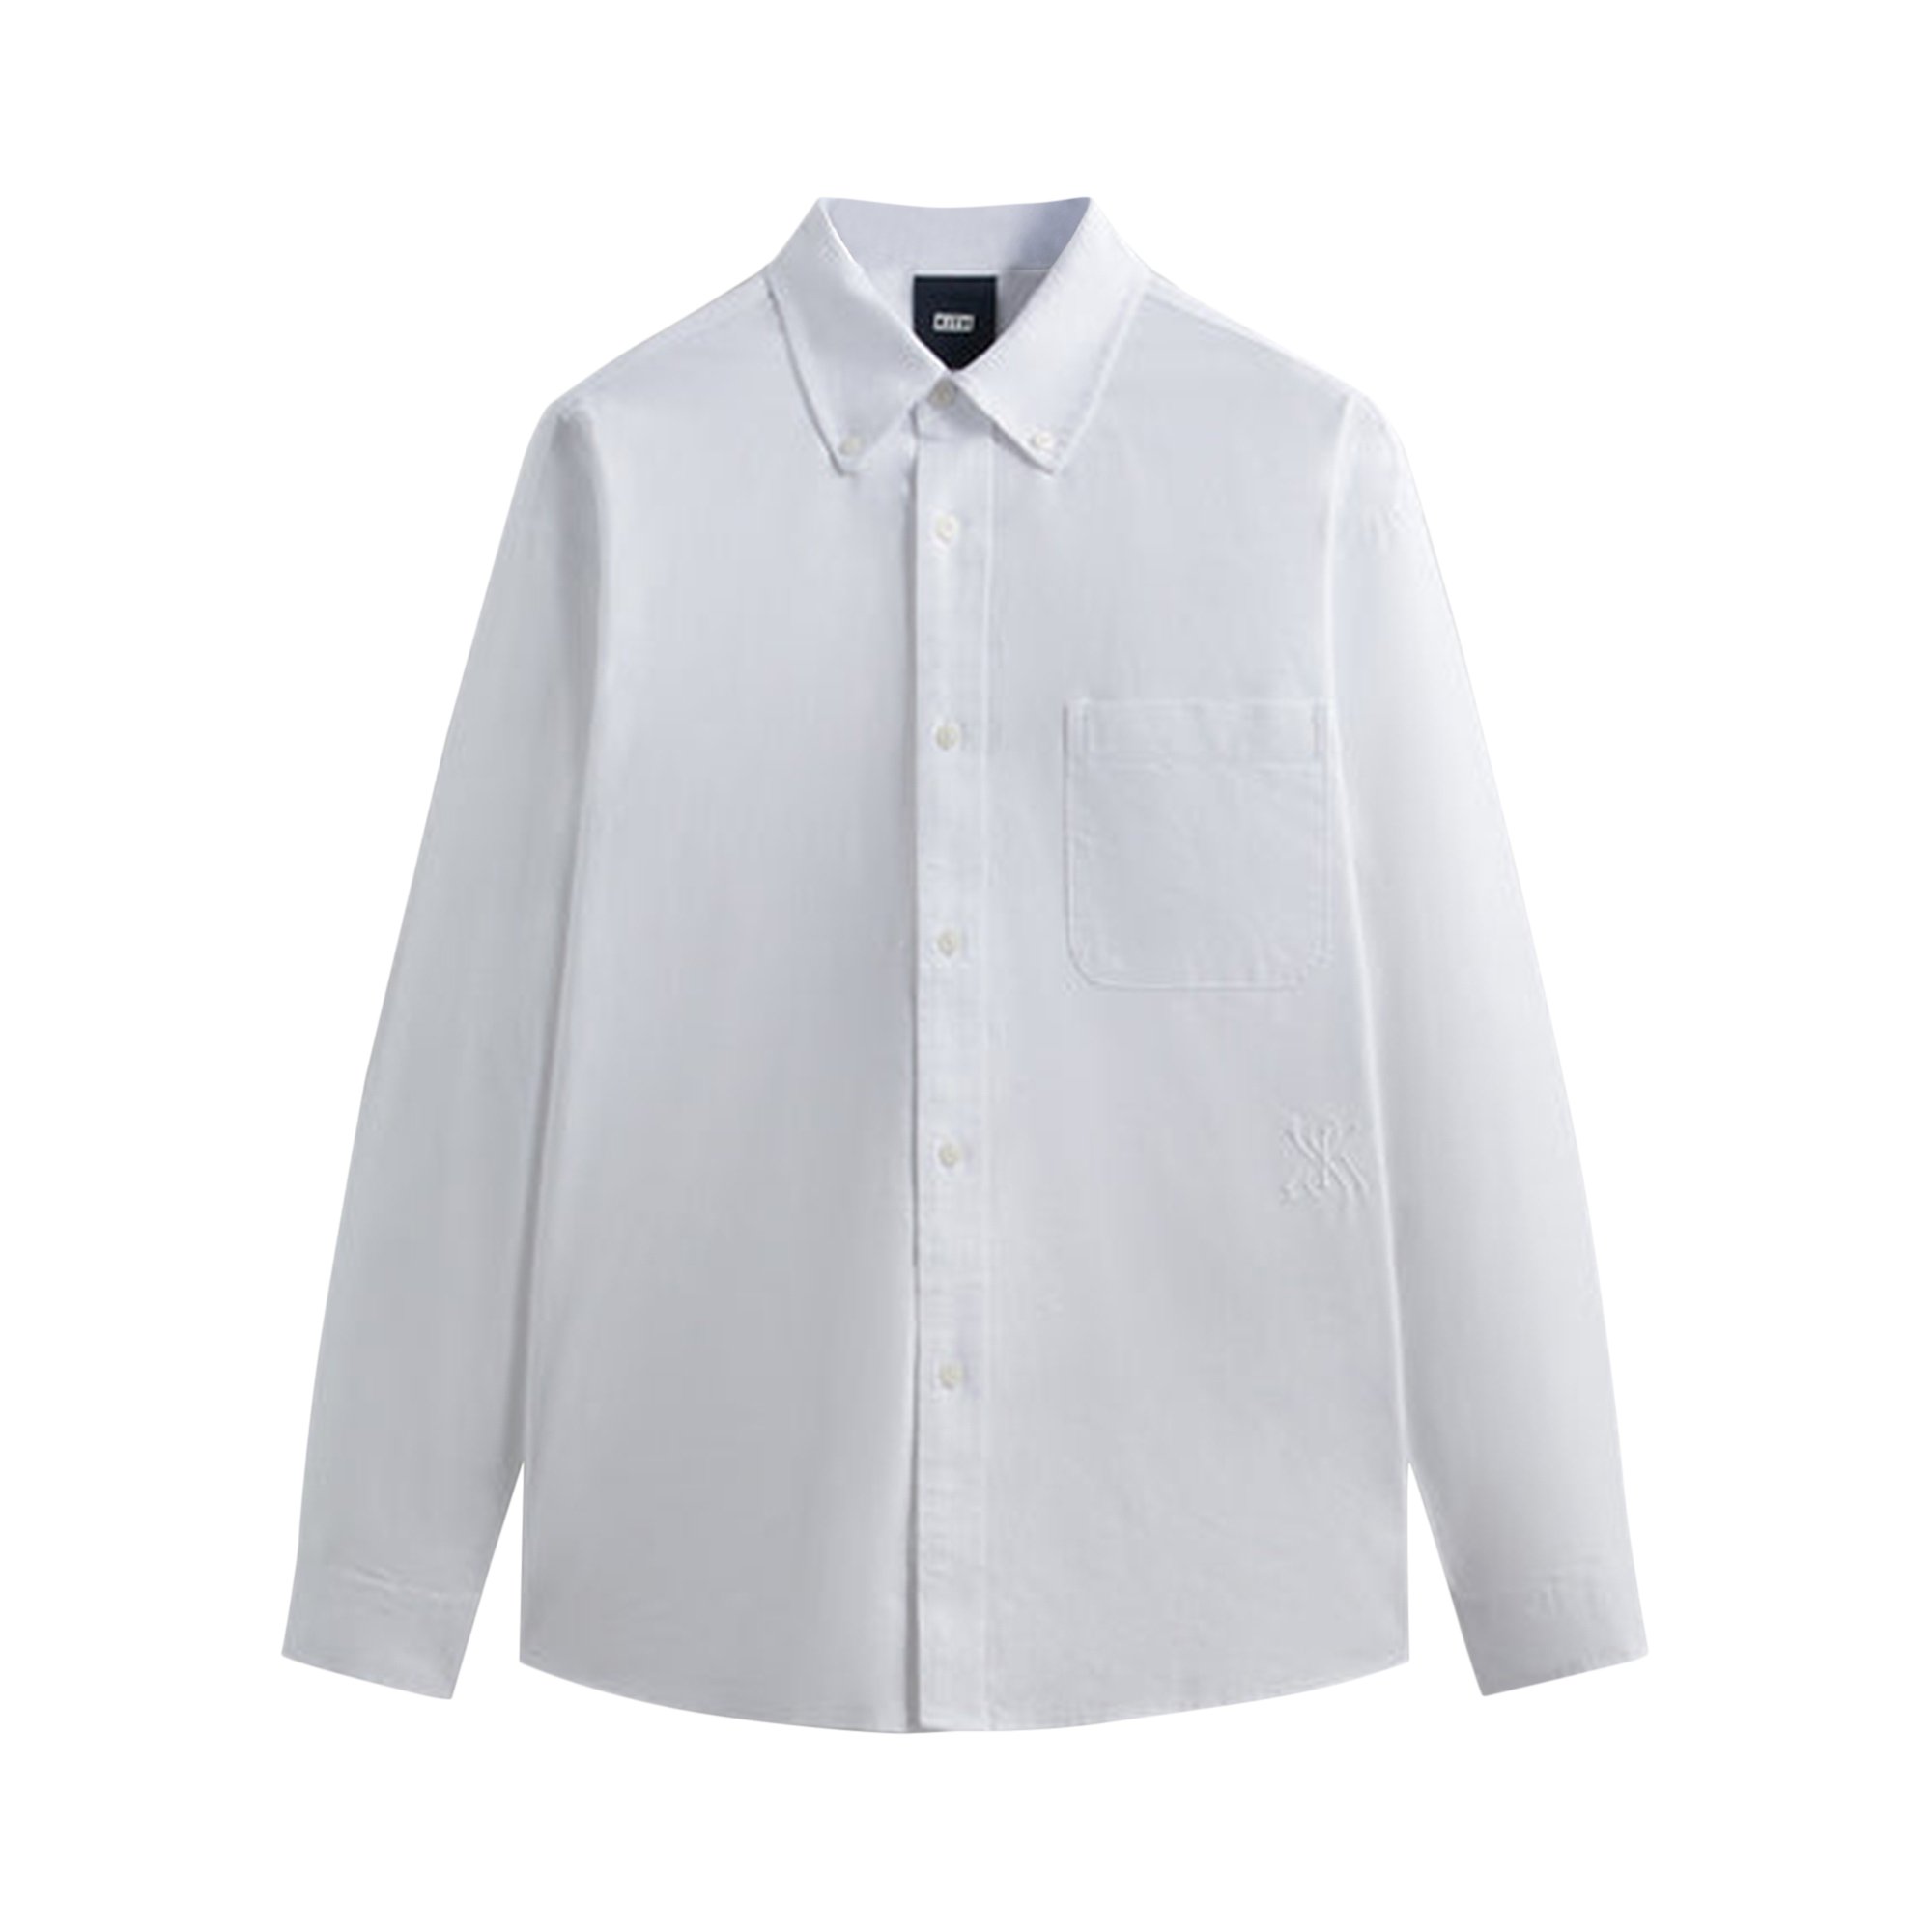 Buy Kith Washed Oxford Apollo Shirt 'White' - KHM031330 101 ...